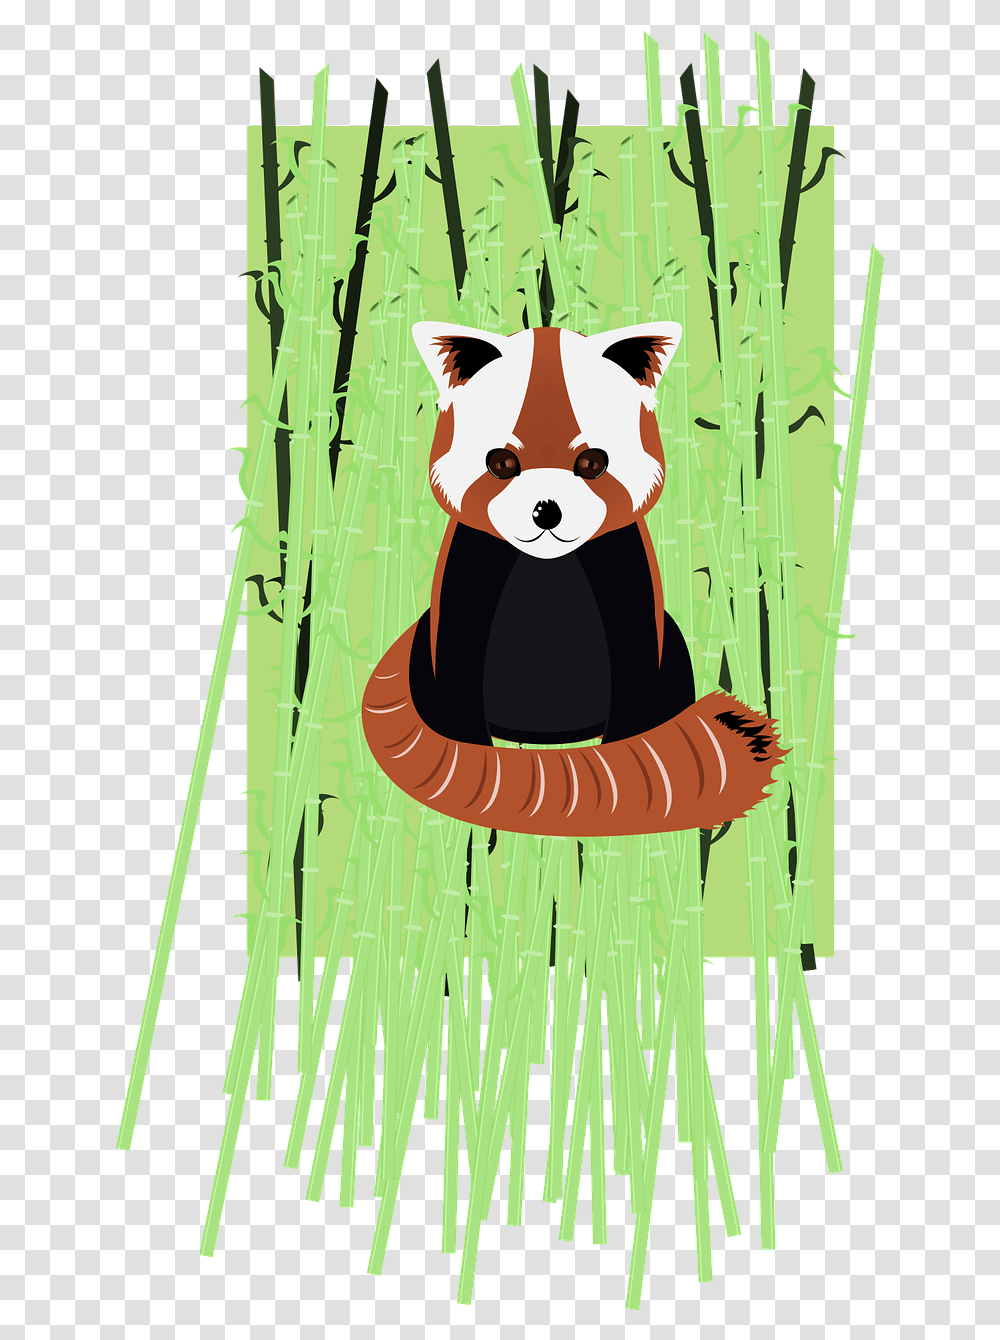 Panda On Bamboo, Giant Panda, Wildlife, Mammal, Animal Transparent Png